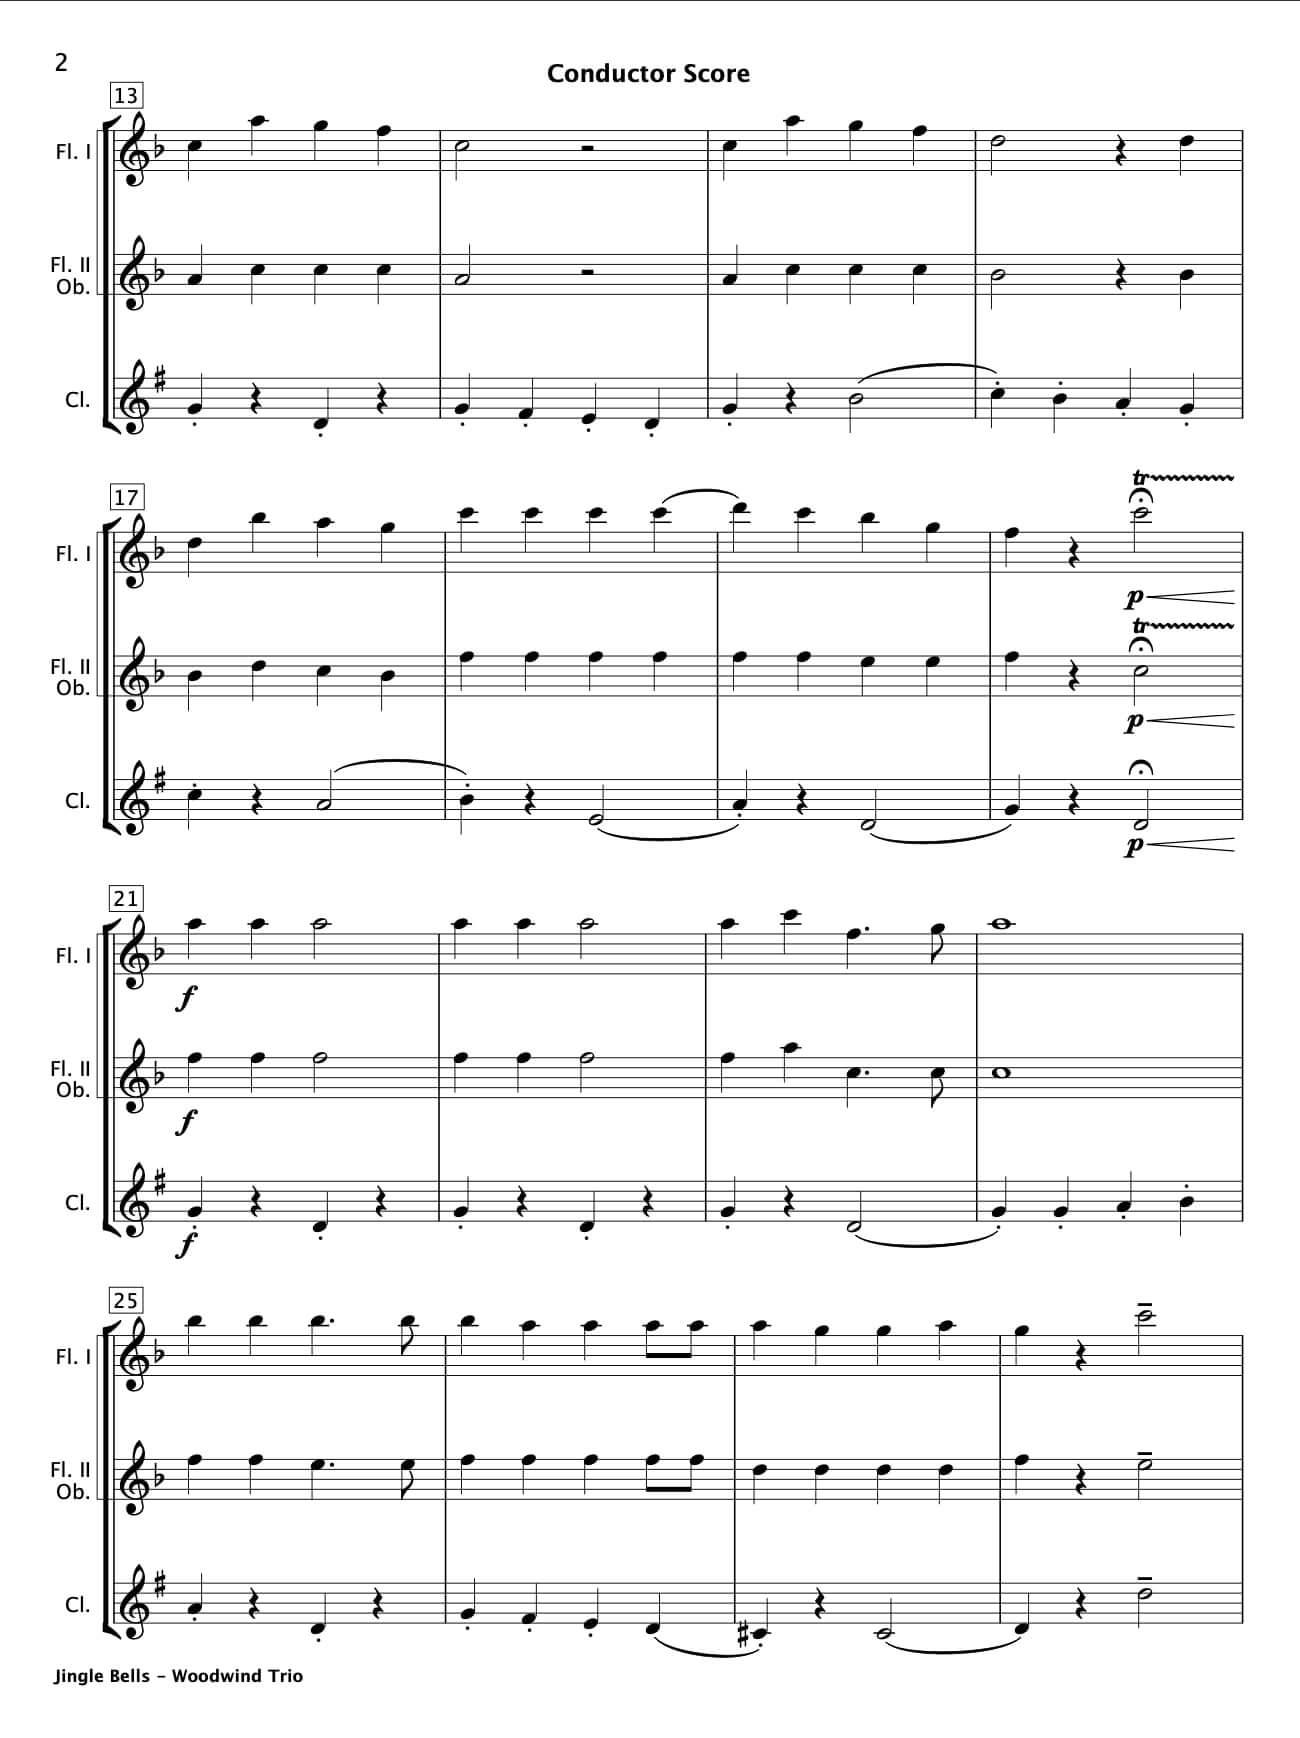 Jingle Bells (Woodwind Trio) - Paul Barker Music 